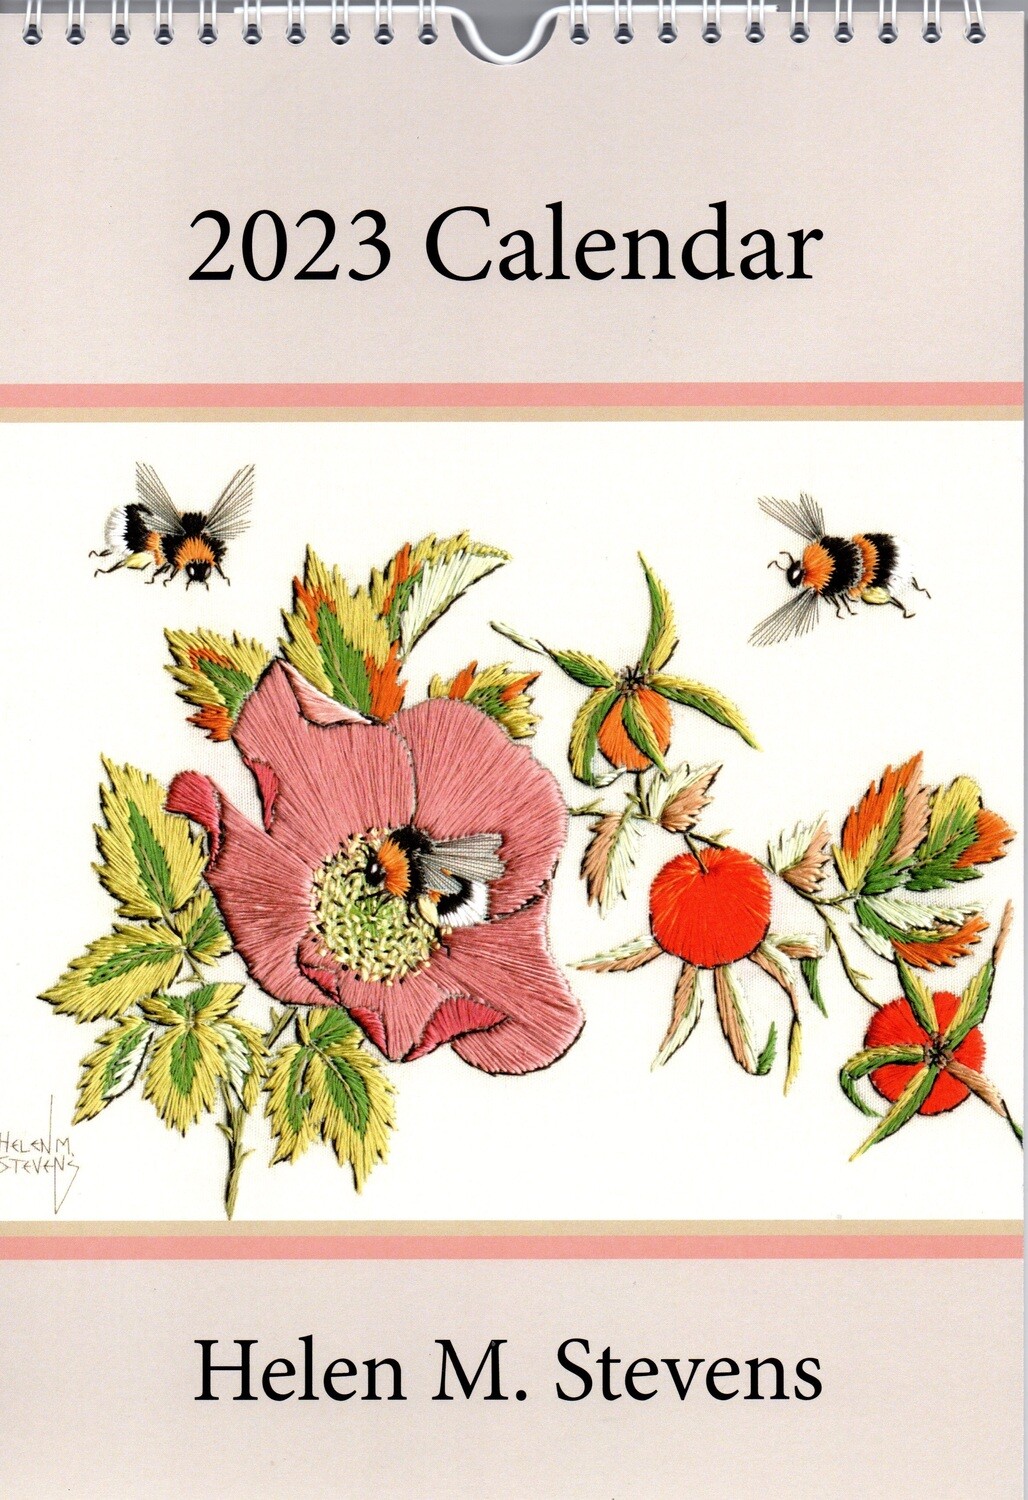 Helen M. Stevens' 2023 Calendar (Double Pack)